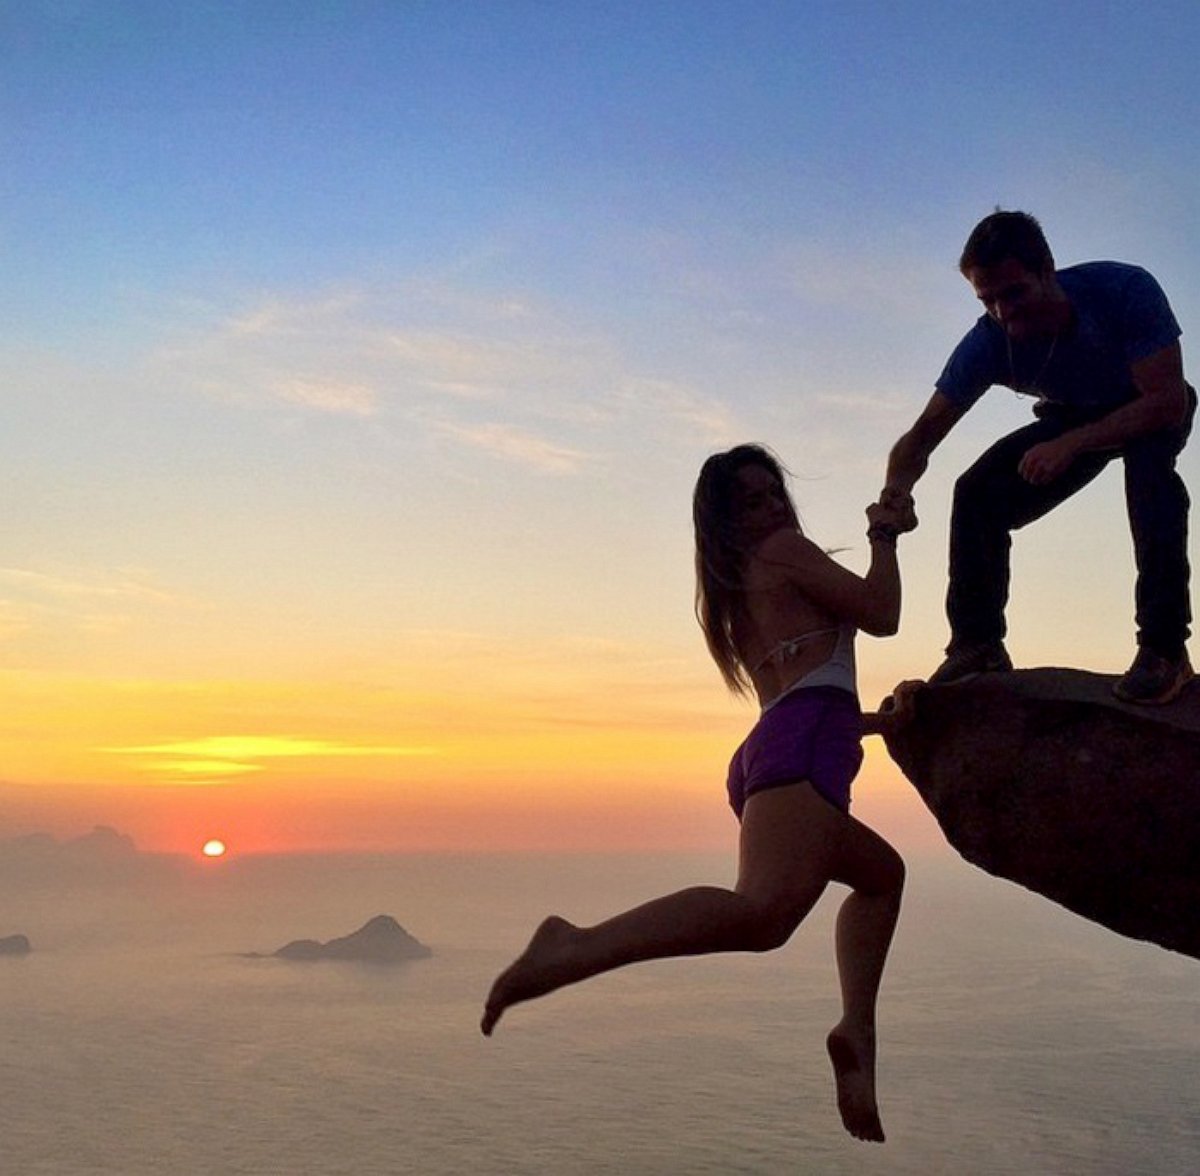 PHOTO: The cliff's location is Pedra da Gavea, Rio de Janeiro Brazil.